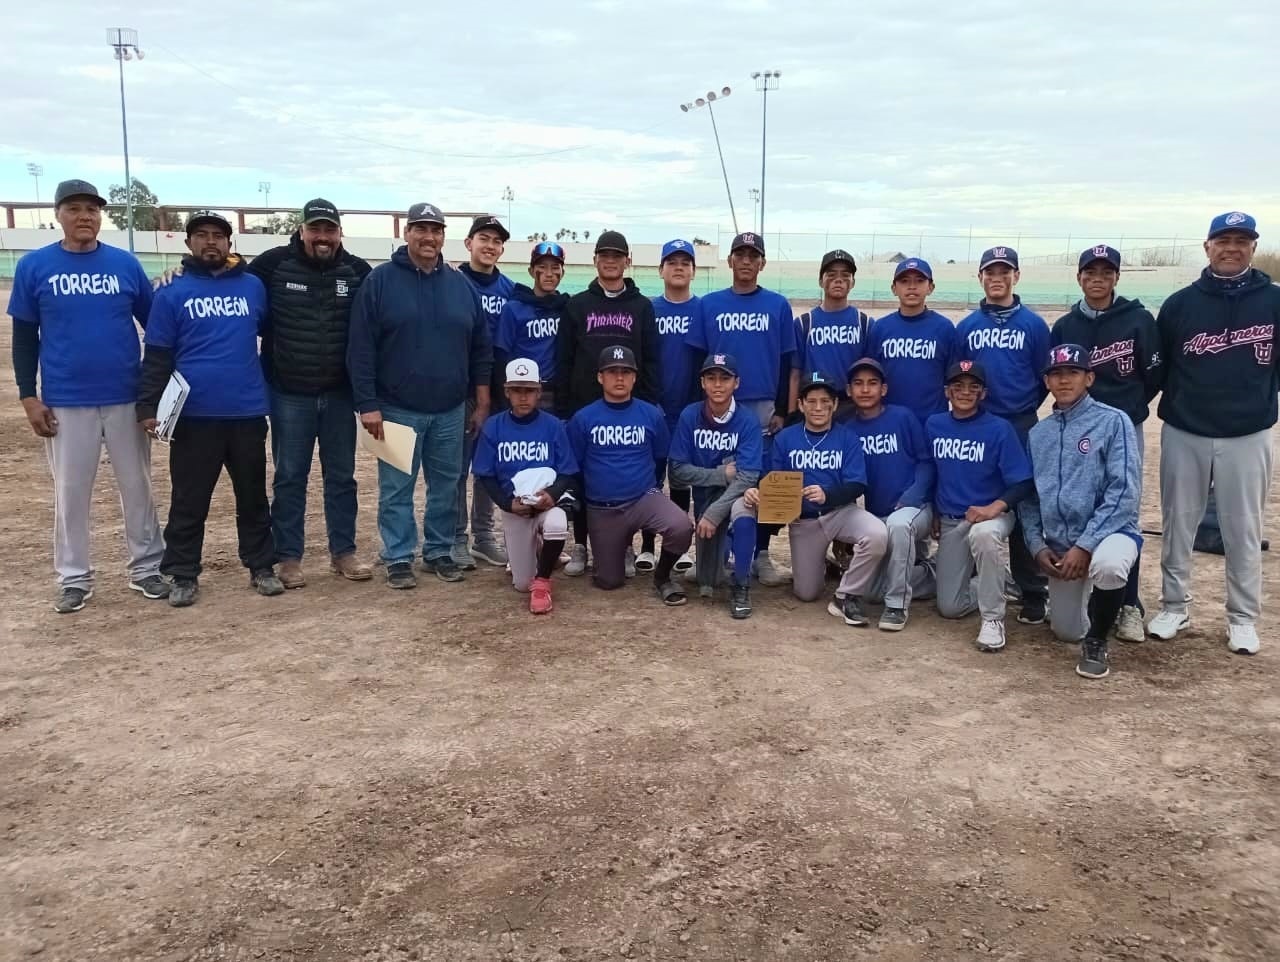 La eliminatoria regional de beisbol ganó el equipo de Torreón. (EL SIGLO DE TORREÓN)